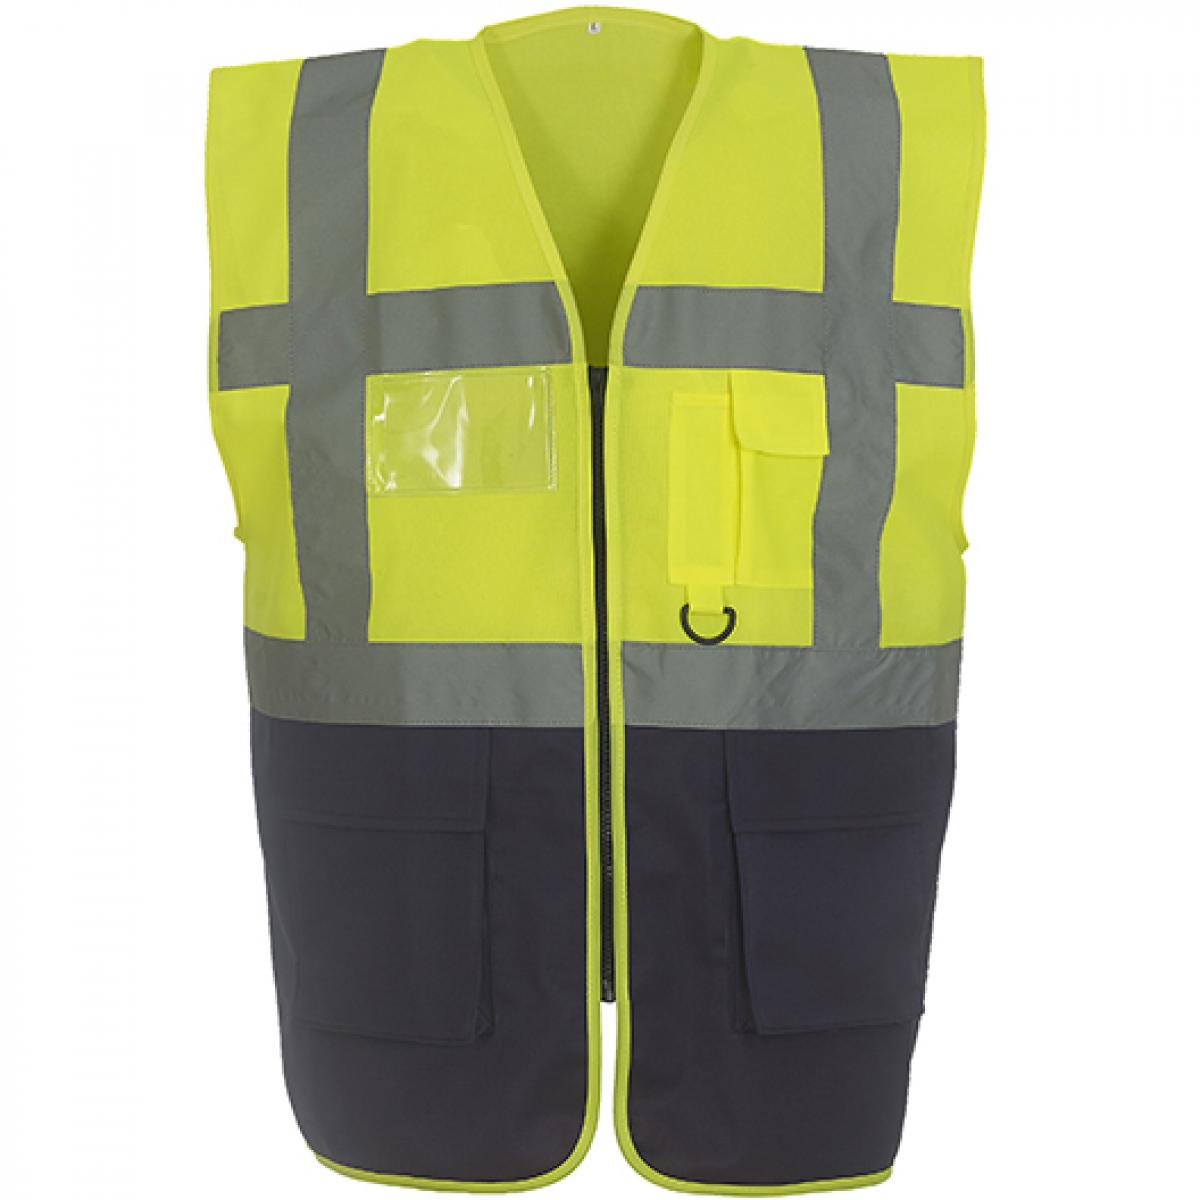 Hersteller: YOKO Herstellernummer: HVW801 Artikelbezeichnung: Herren Multi-Functional Executive Waistcoat Farbe: Hi-Vis Yellow/Navy